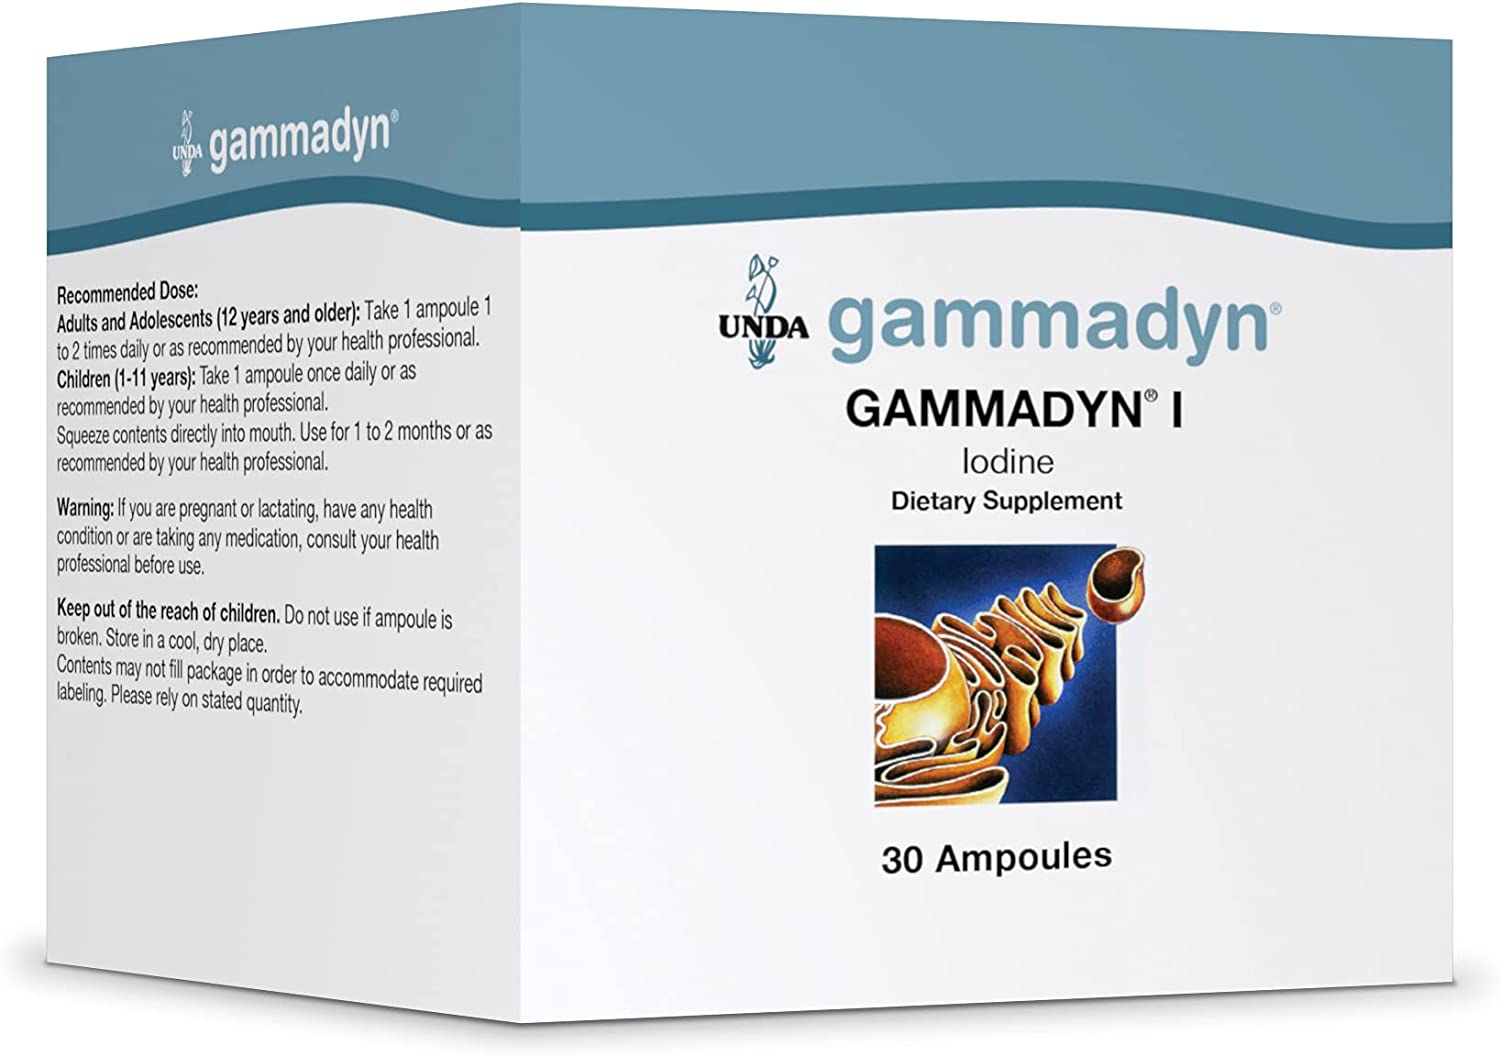 GammadynI